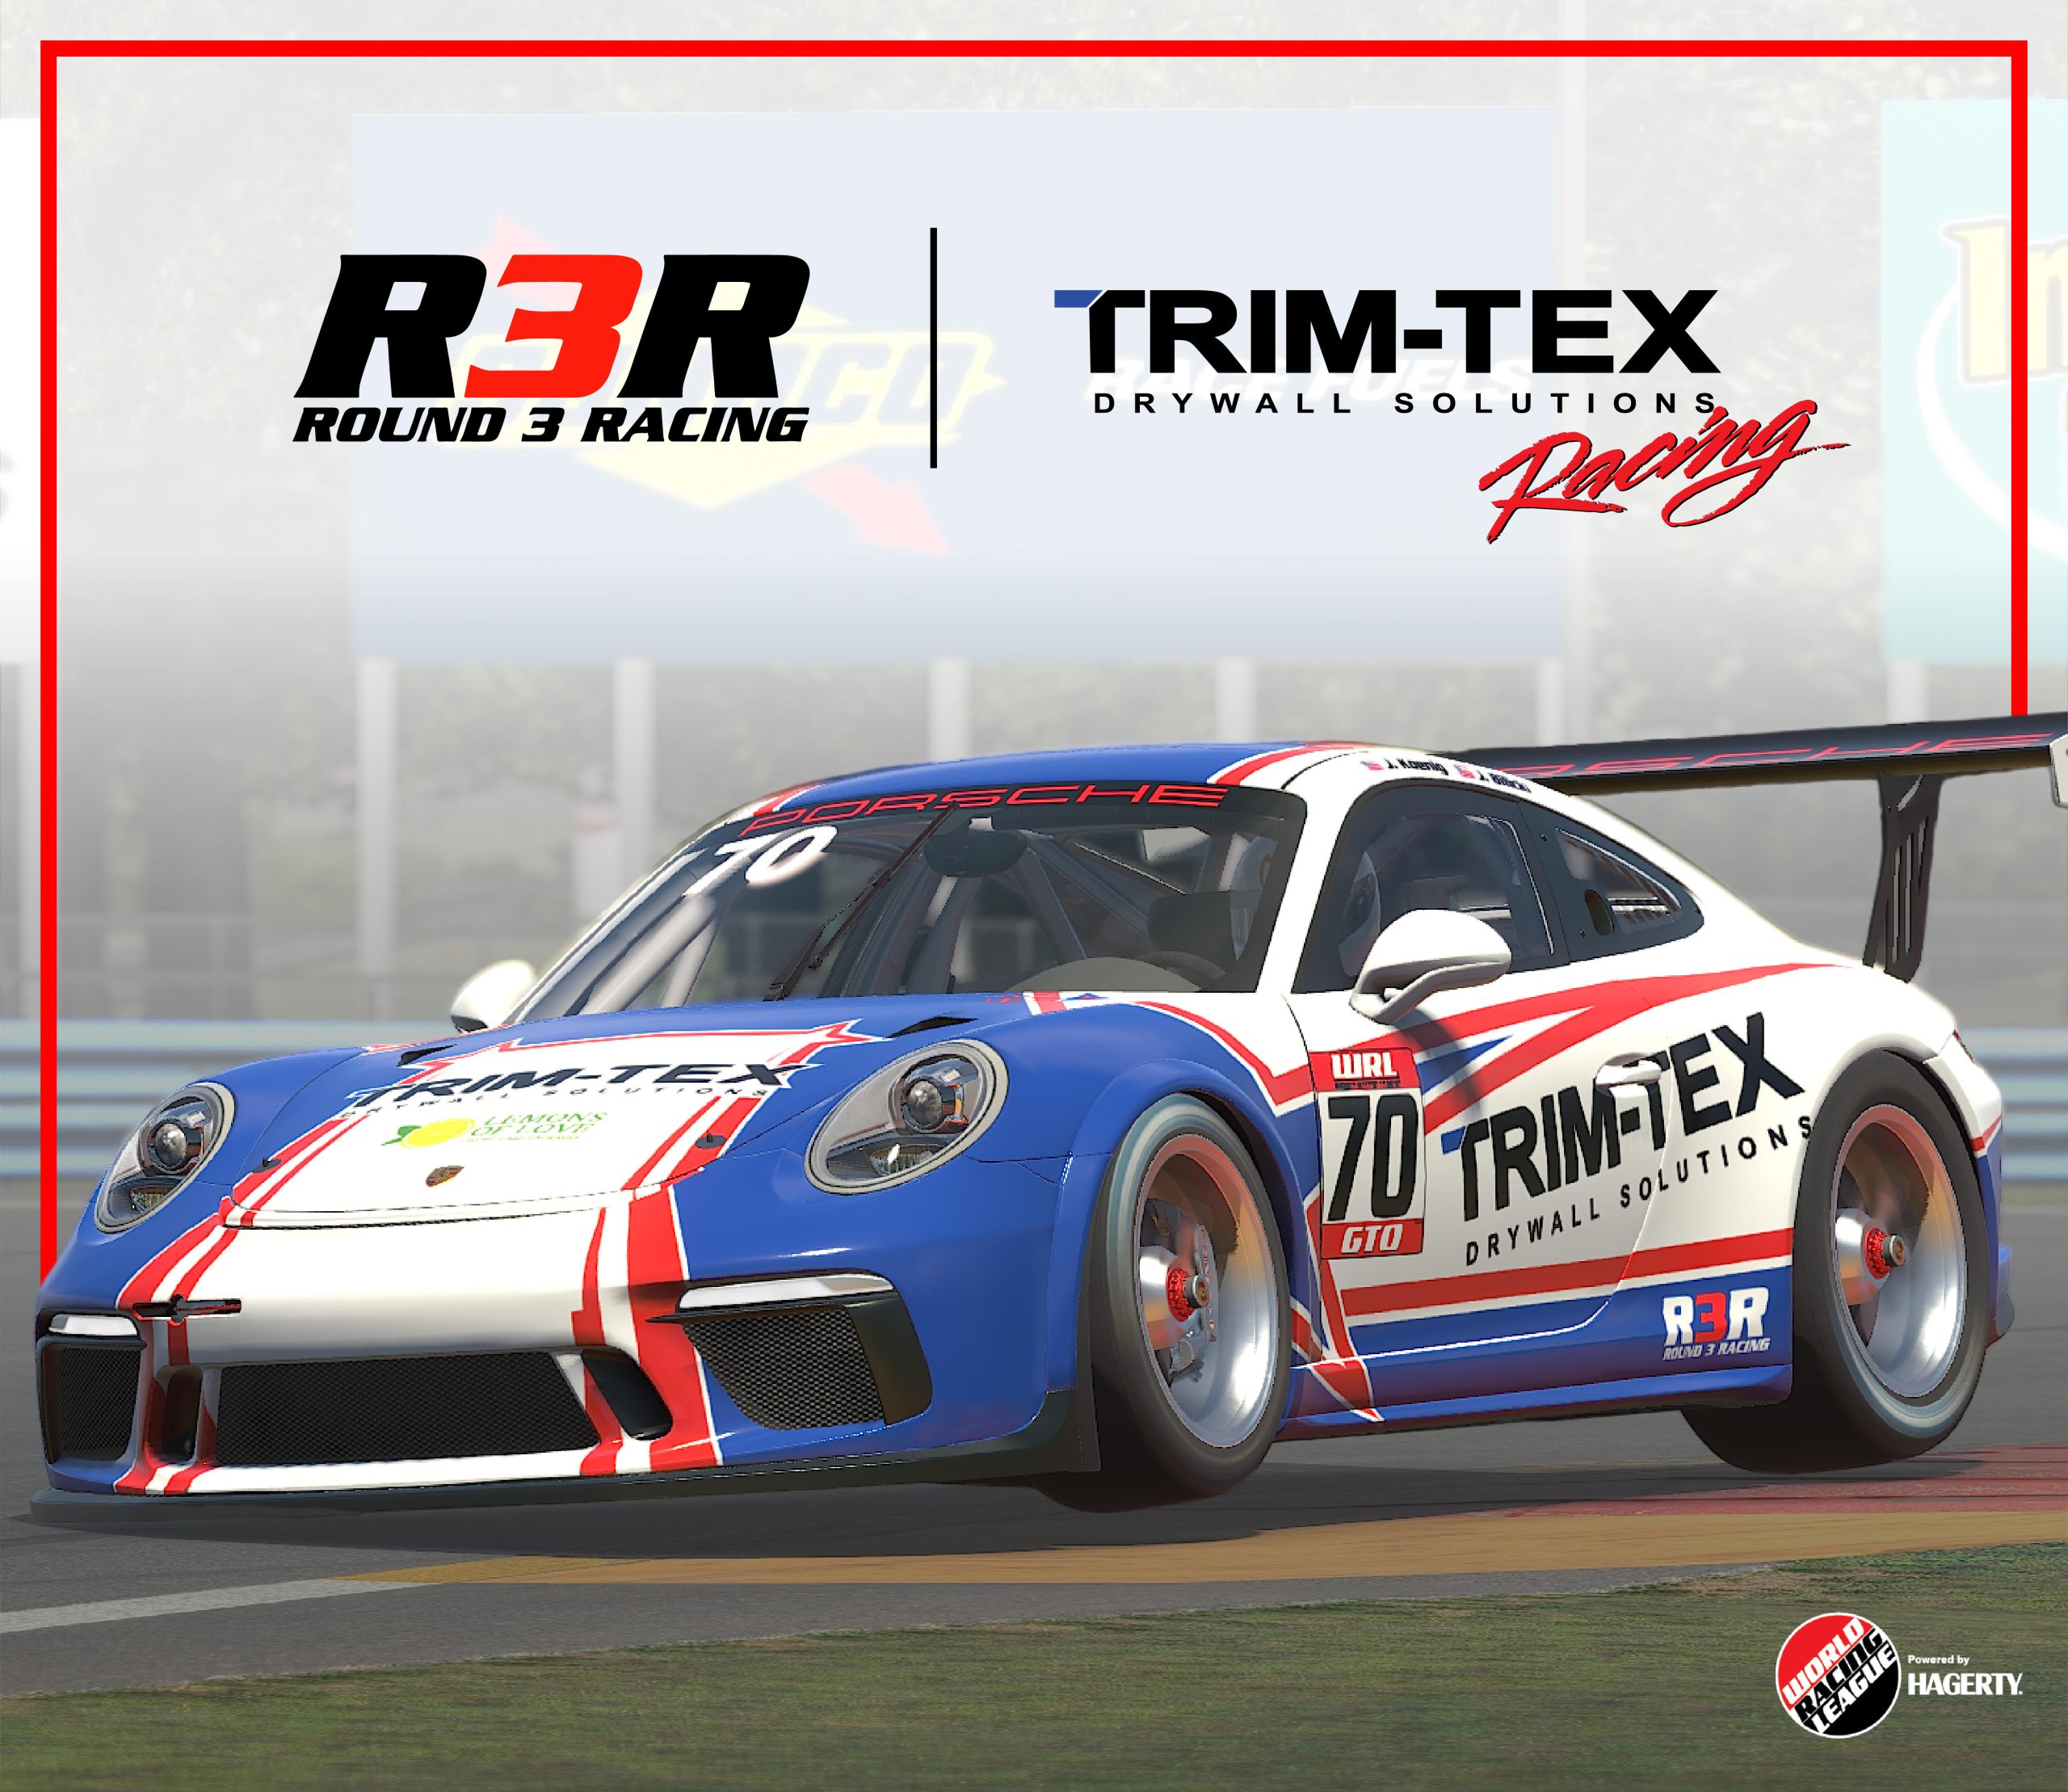 Trim-Tex Racing